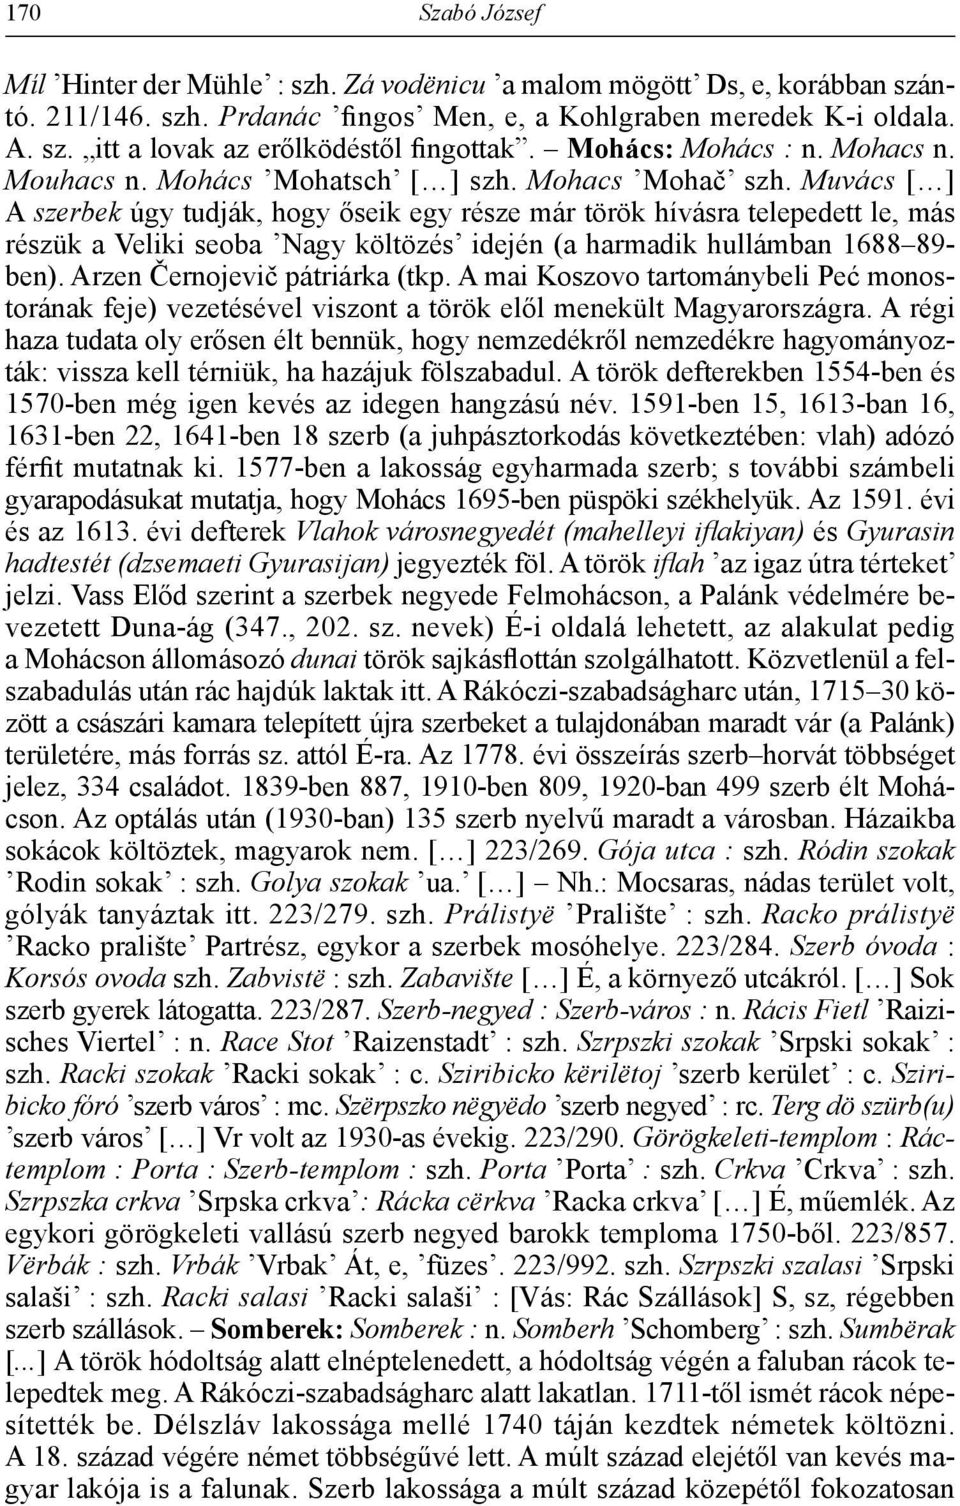 Muvács [ ] A szerbek úgy tudják, hogy őseik egy része már török hívásra telepedett le, más részük a Veliki seoba Nagy költözés idején (a harmadik hullámban 1688 89- ben).